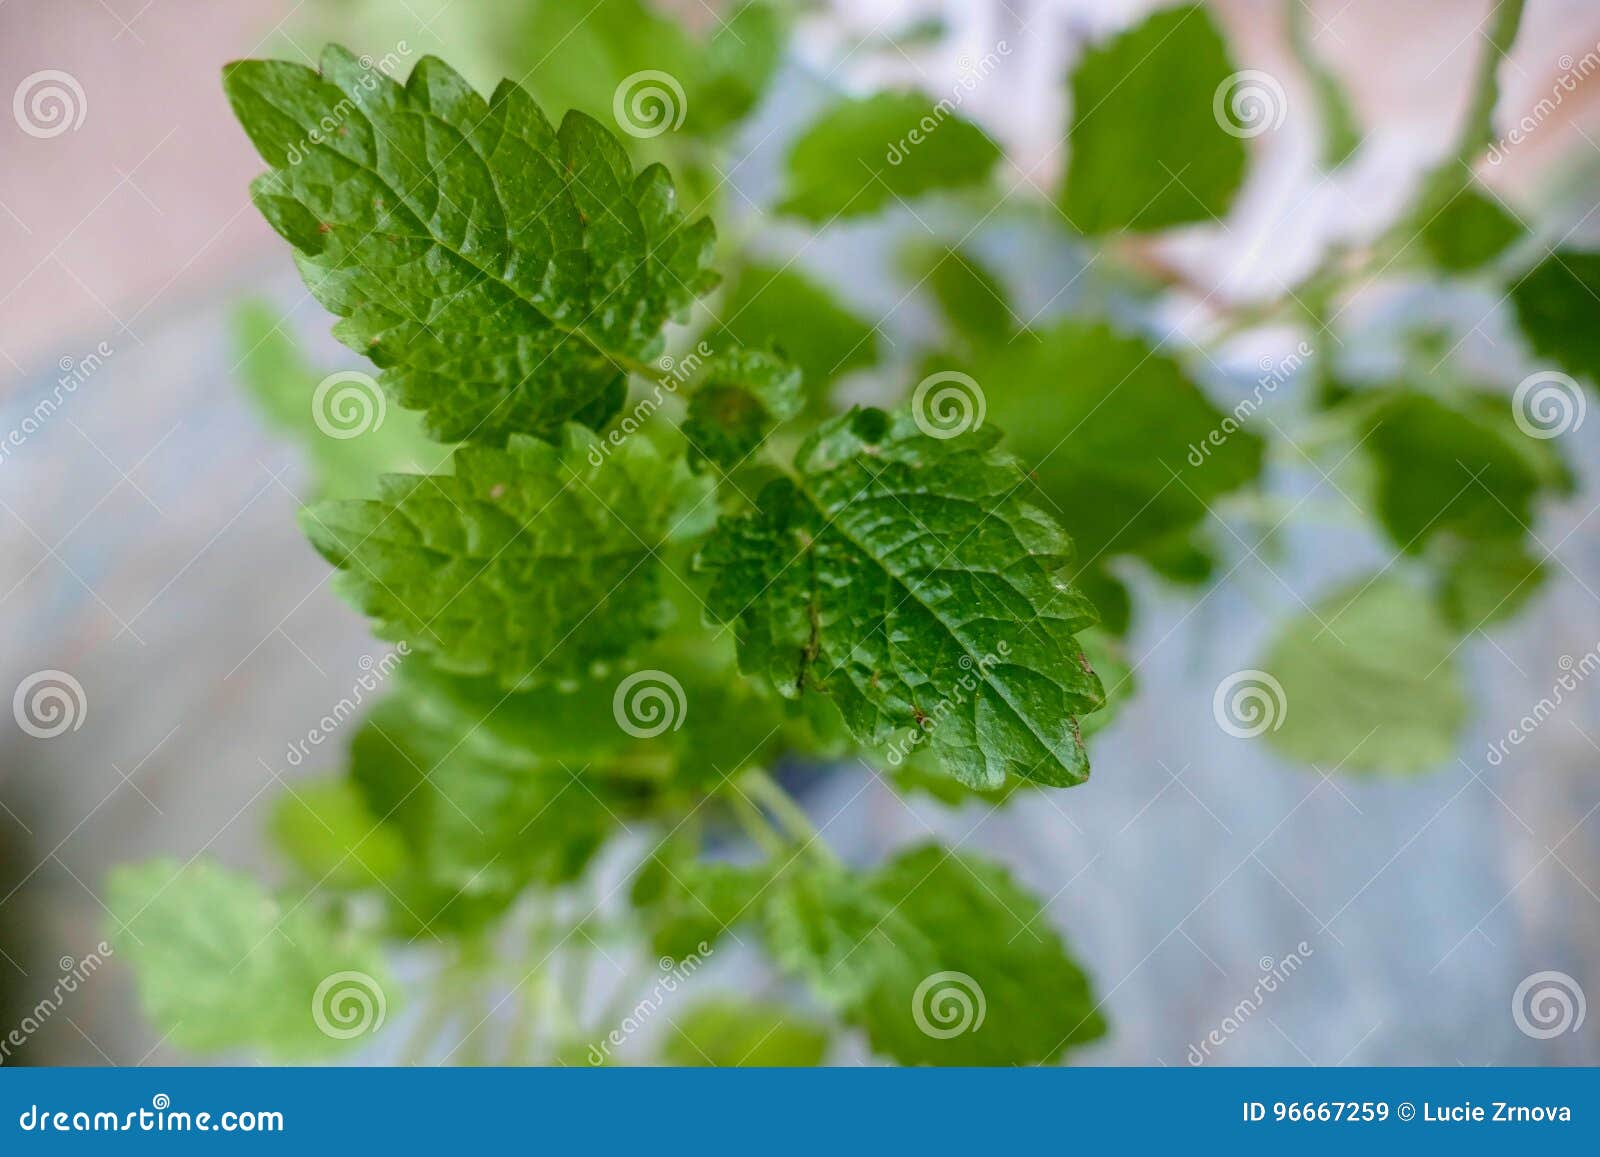 green melisa plant leaf detail